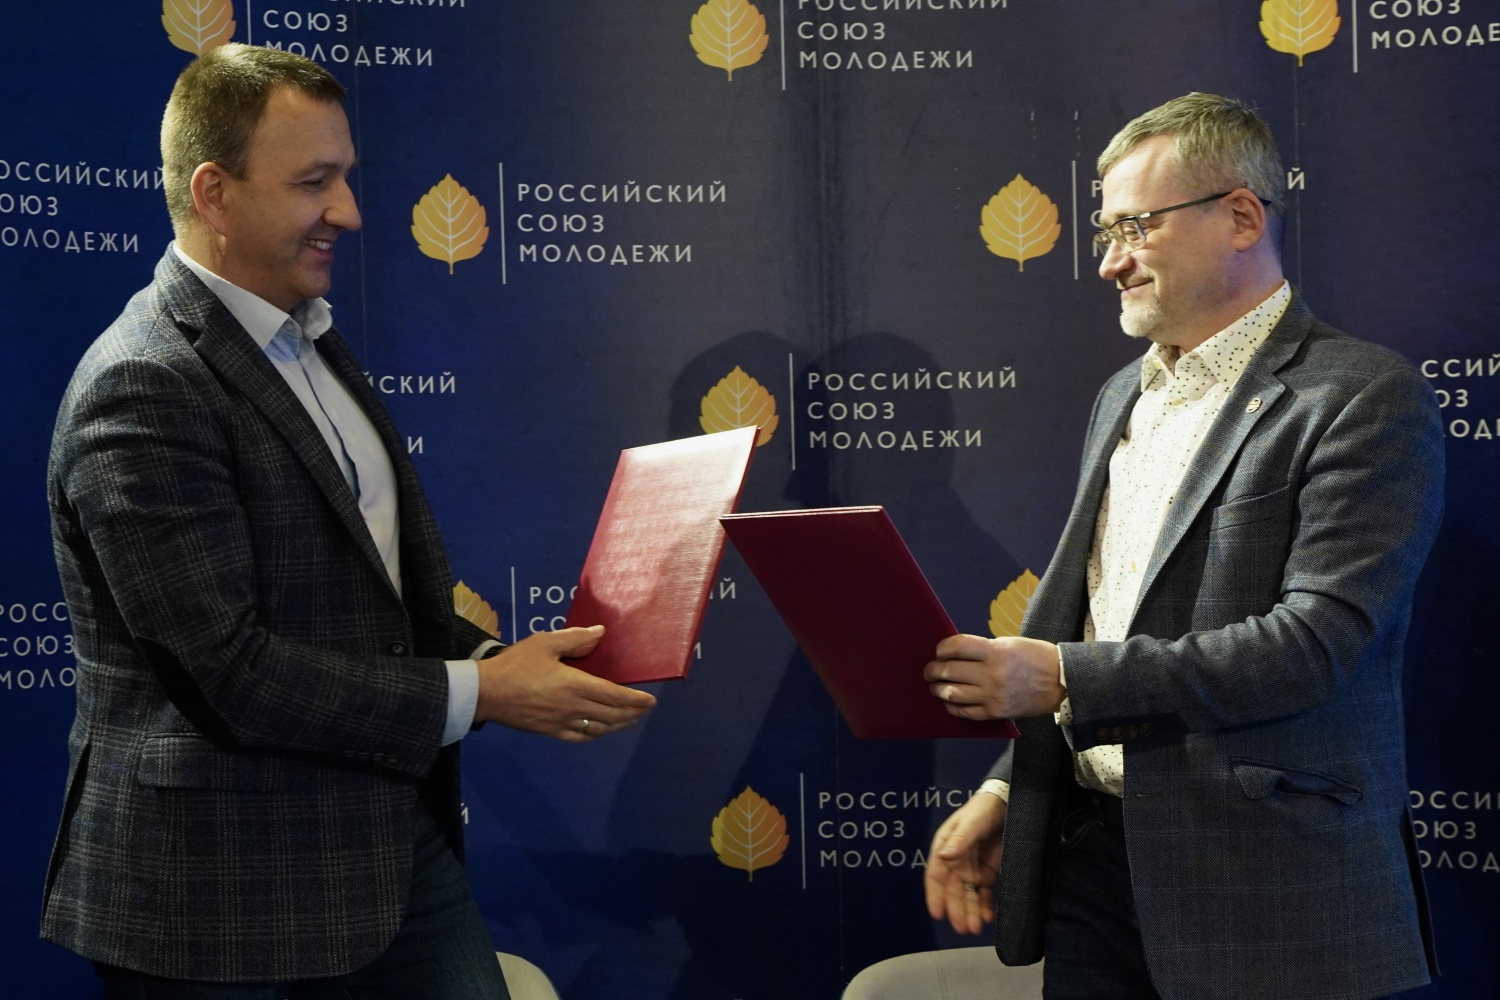 Председатель РСМ Павел Красноруцкий и генеральный директор ВЦИОМ Валерий Федоров подписали соглашение о сотрудничестве